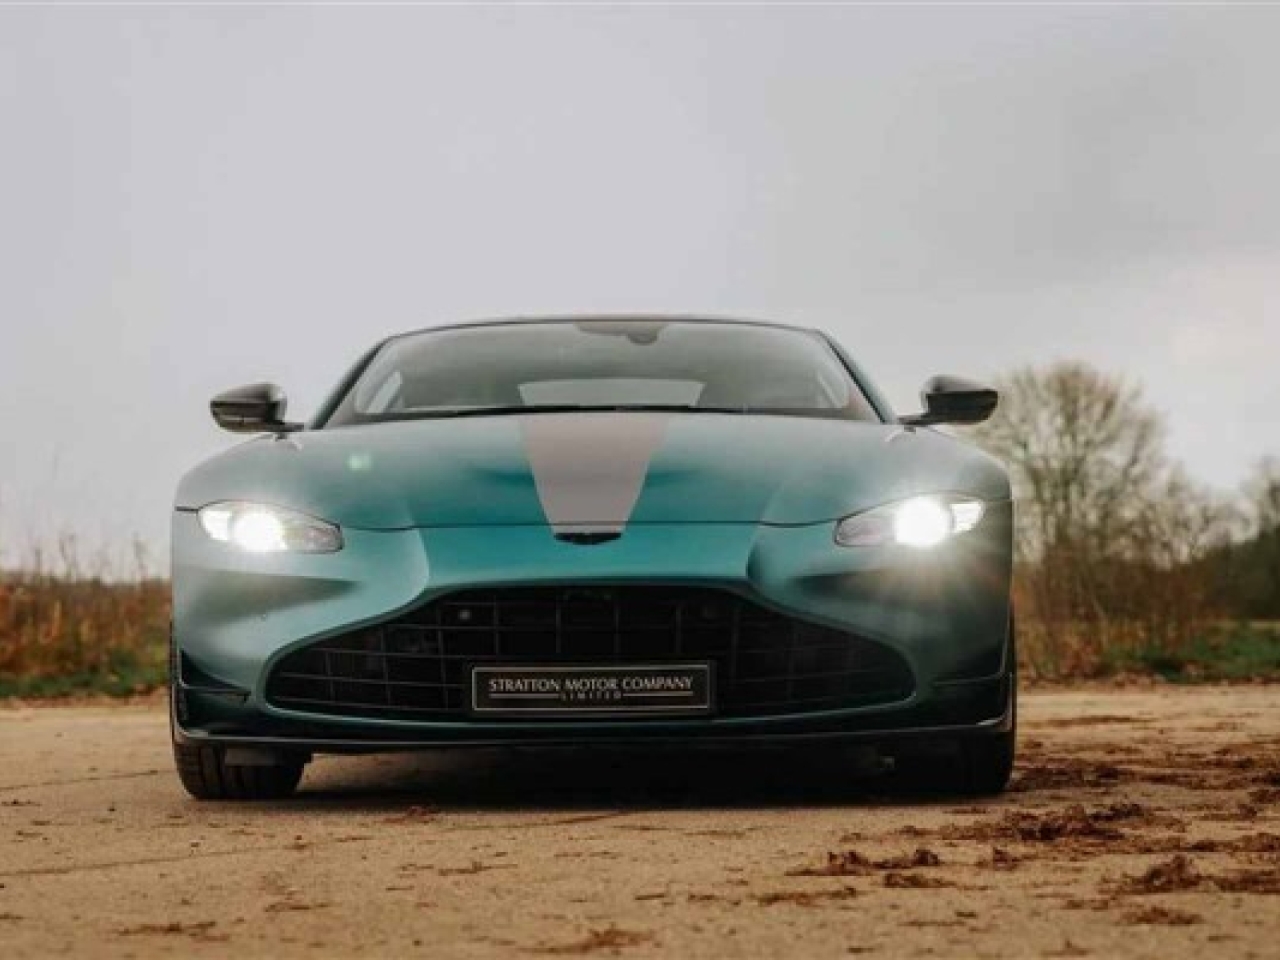 2022 Aston Martin V8 Vantage F1 Edition